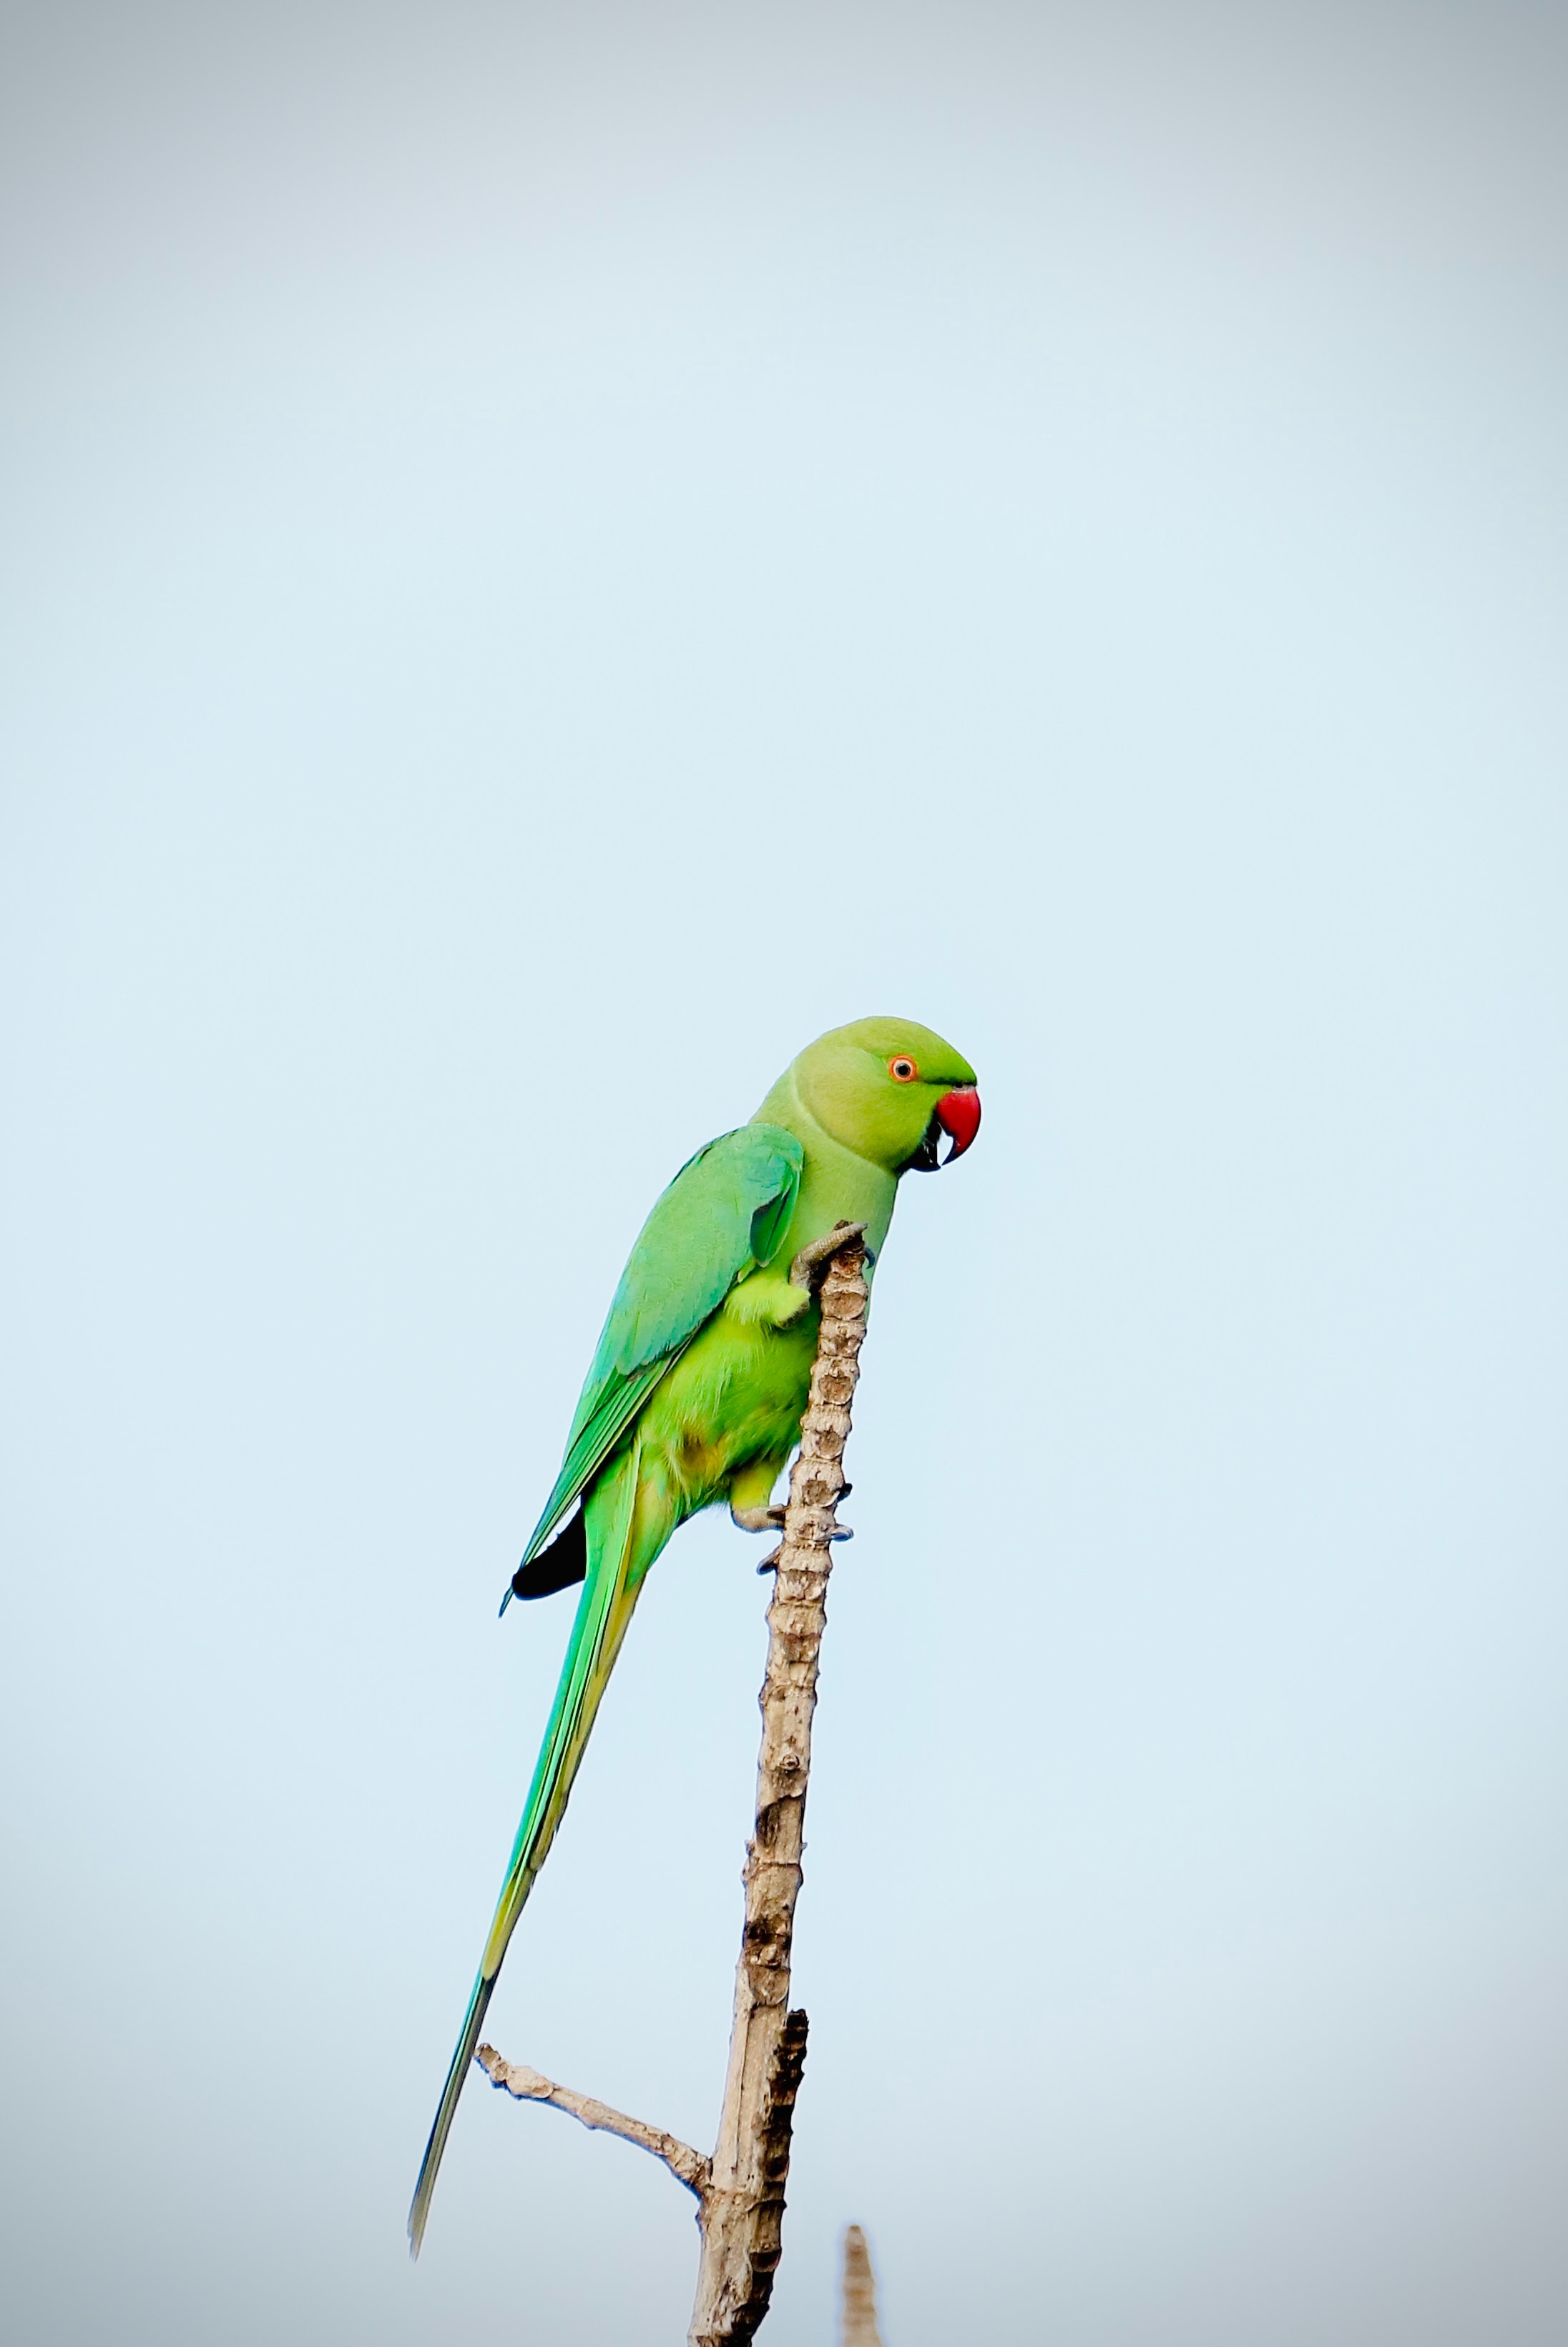 parrots, animals, green, bright, bird, branch